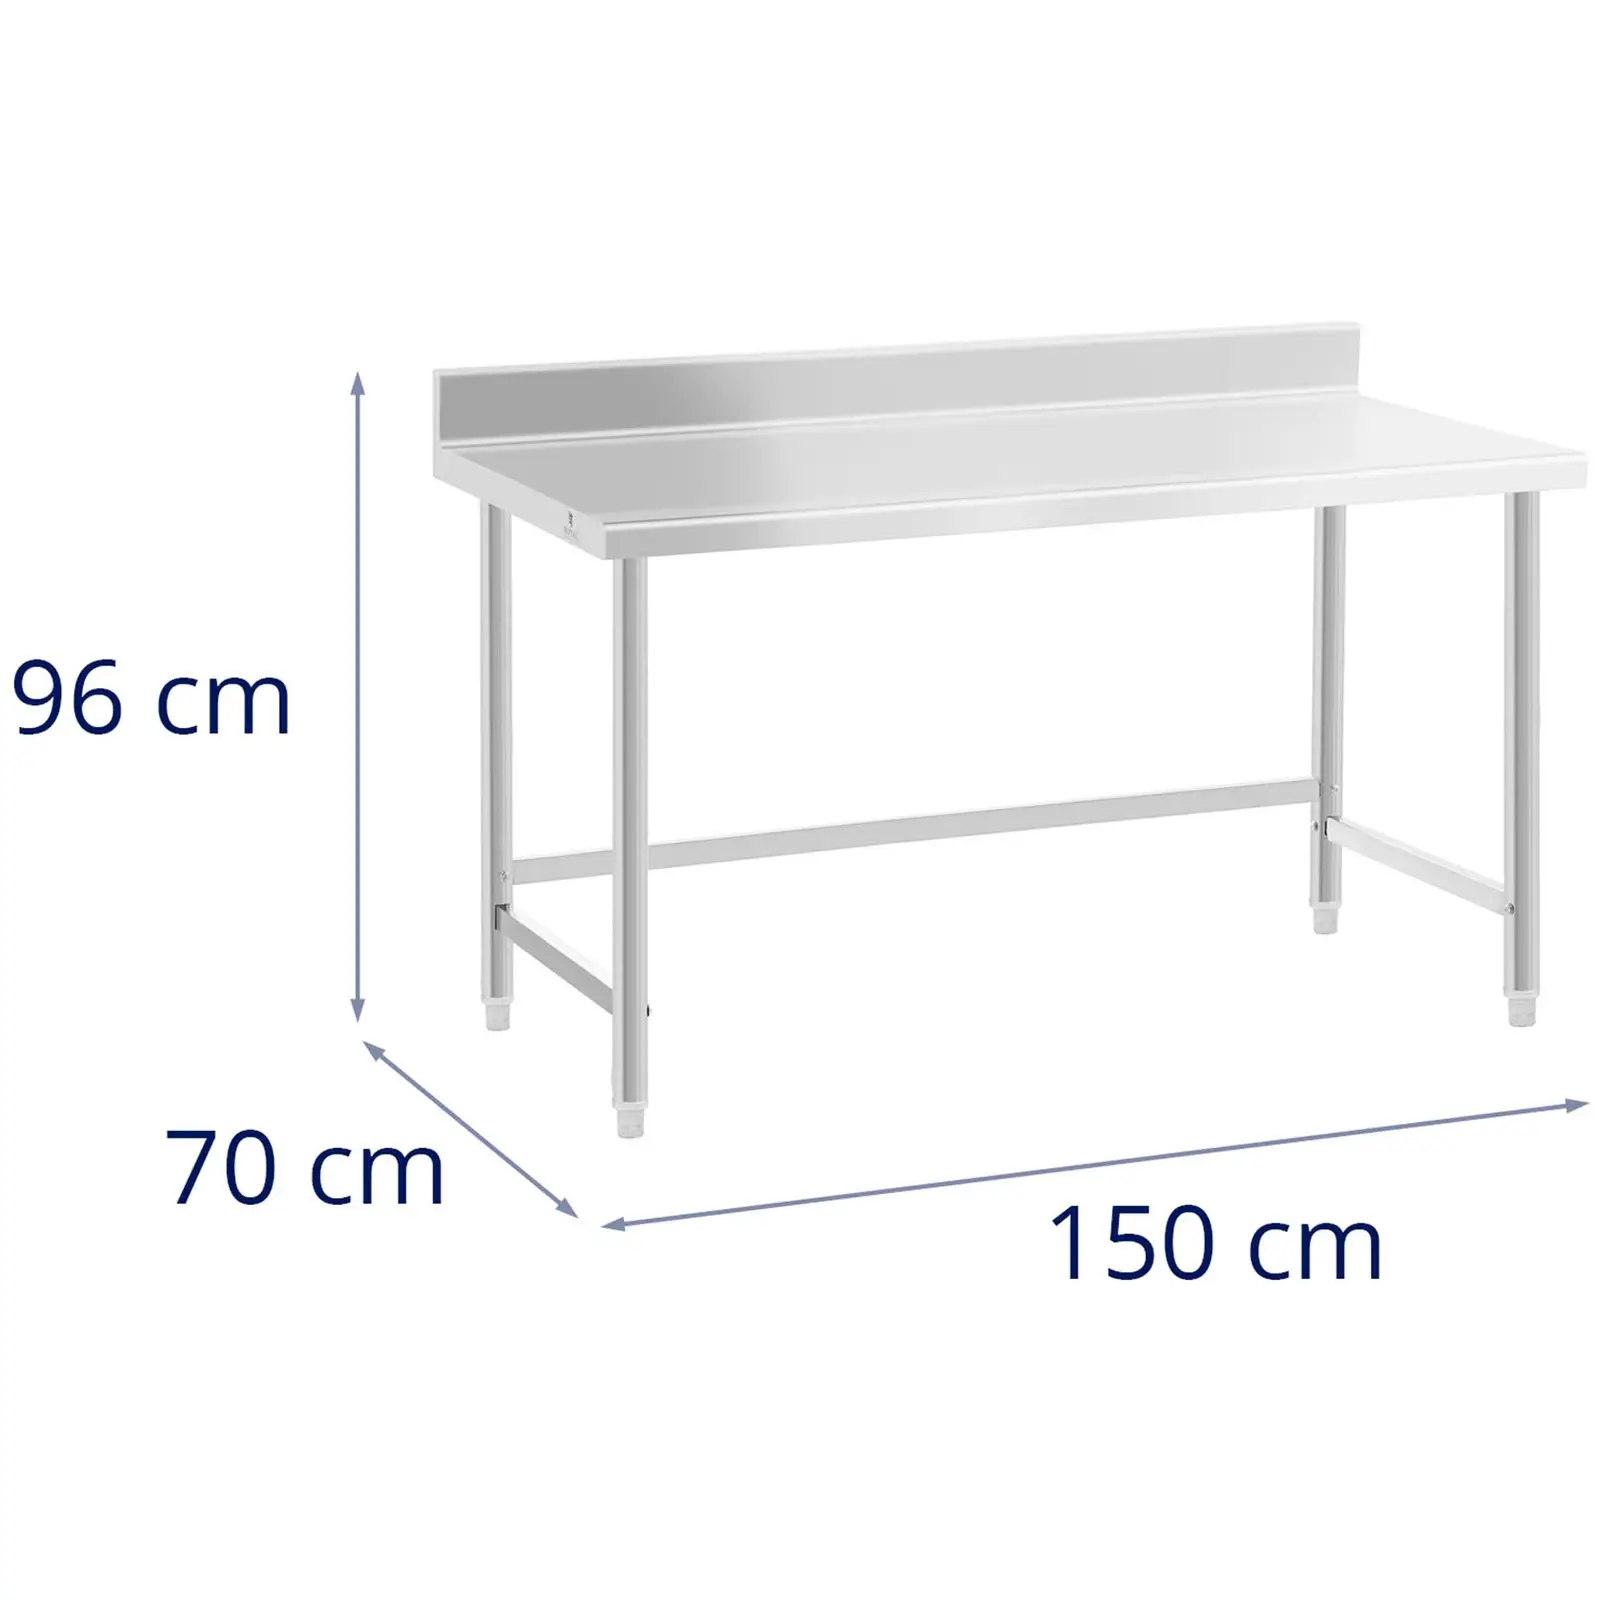 Table de travail inox - 150 x 70 cm - Dosseret - Capacité de 93 kg - Royal Catering